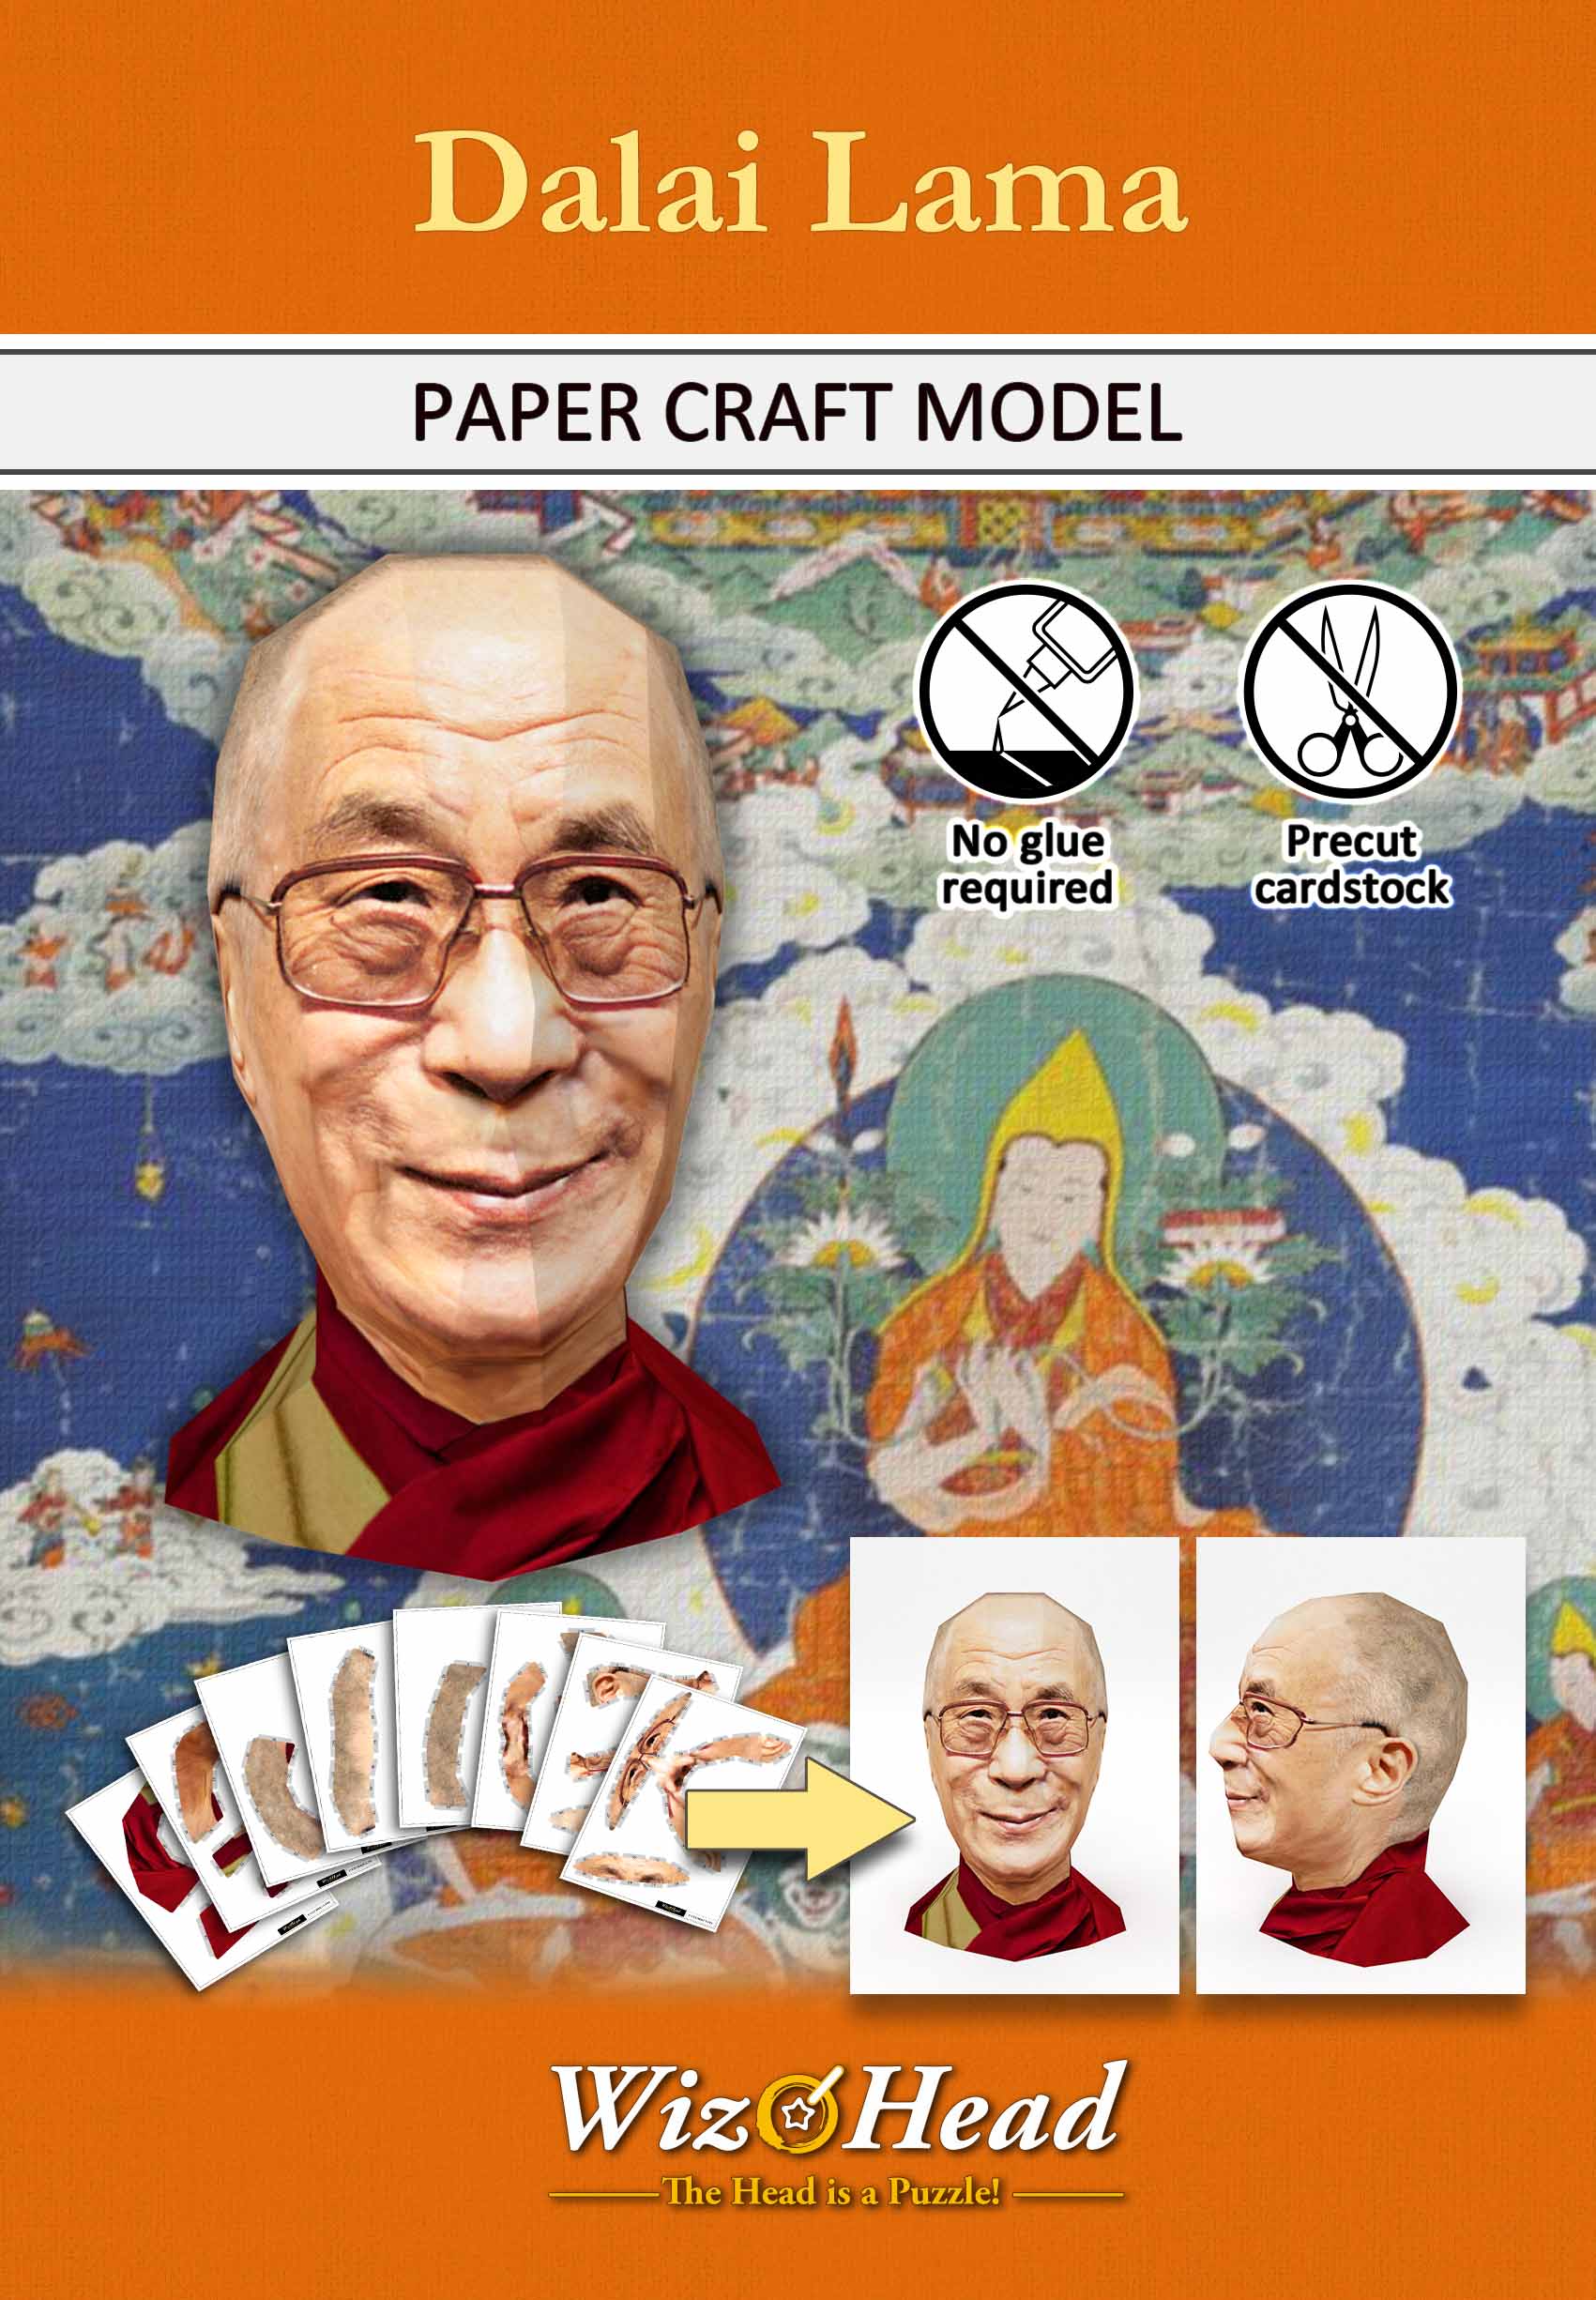 Dalai Lama (Full Size)